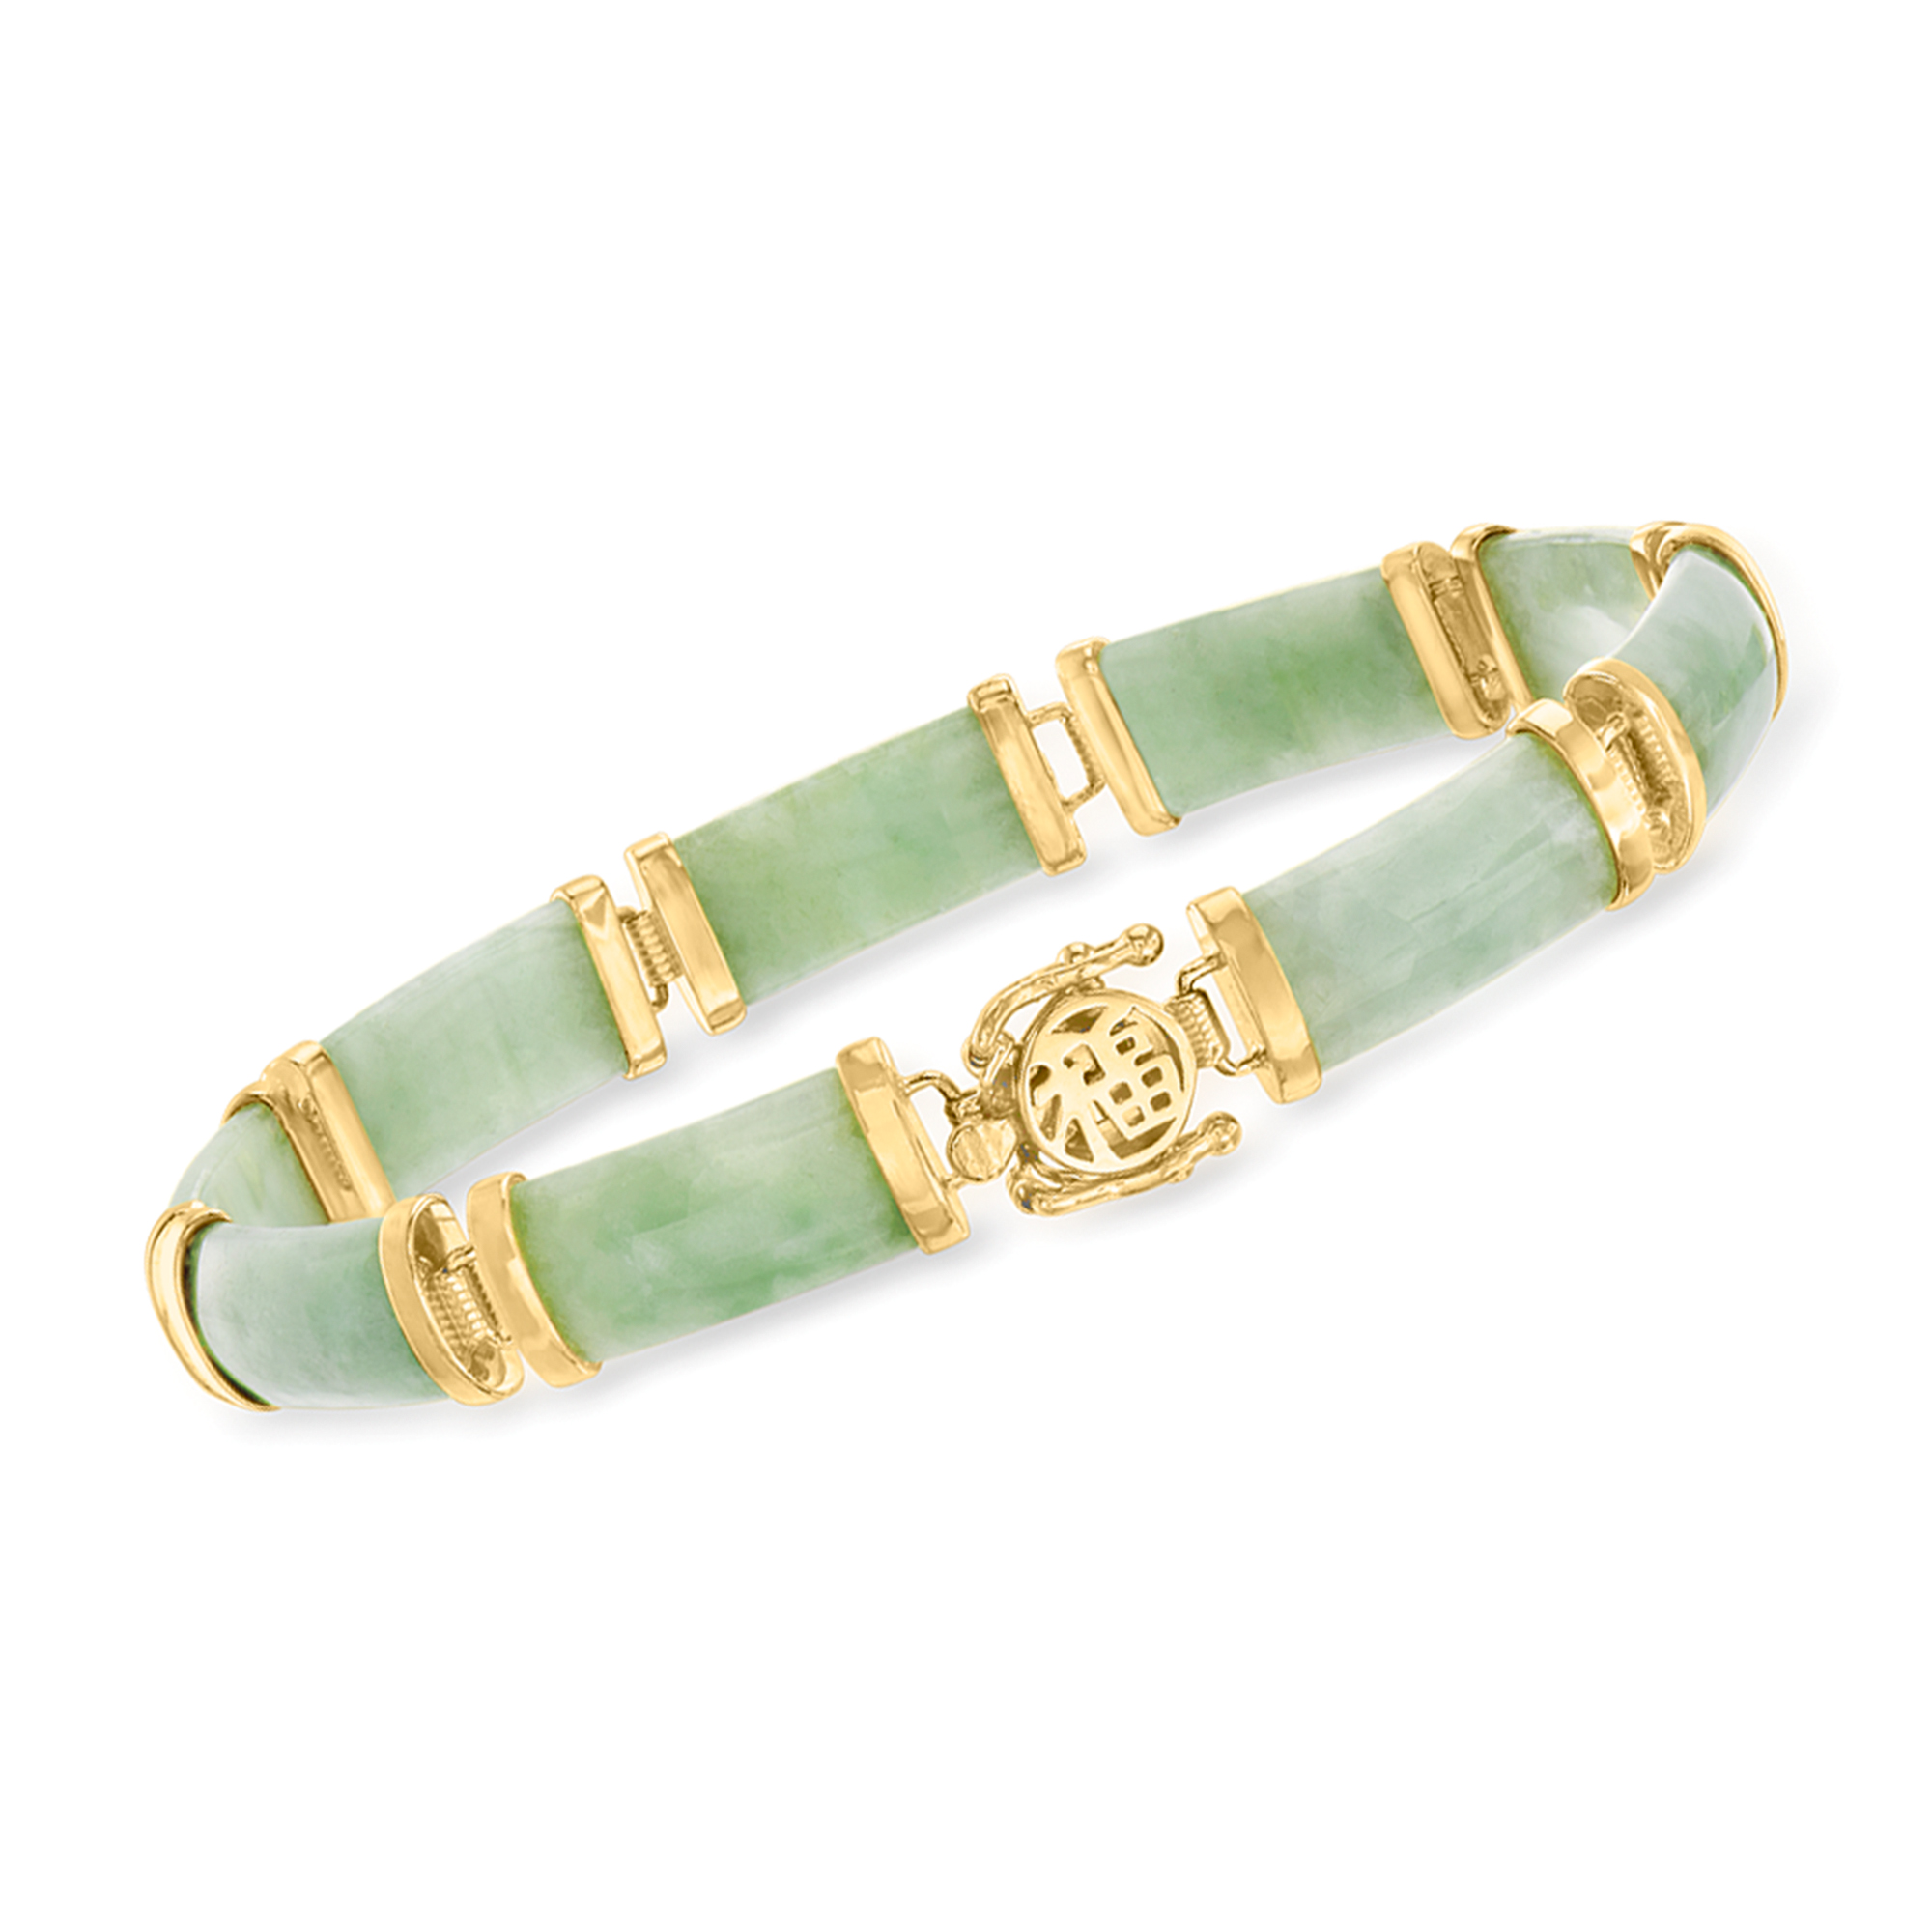 Jade "Good Fortune" Bracelet in 18kt Gold Over Sterling | Ross-Simons